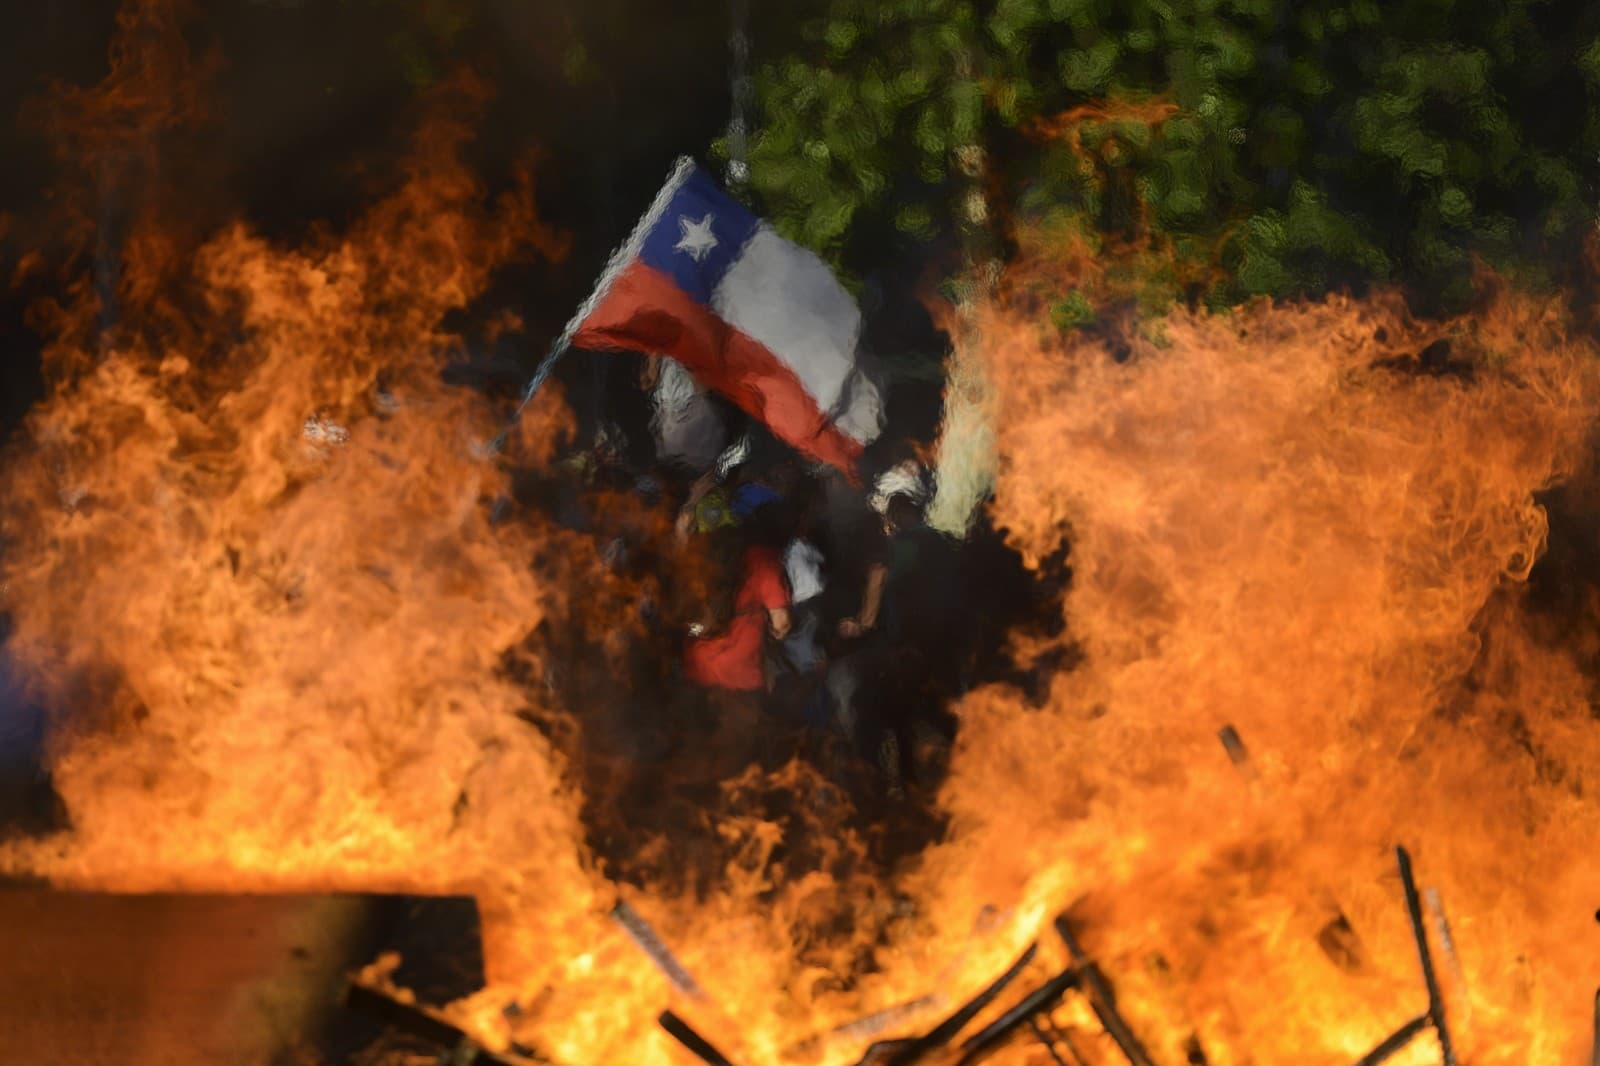 Ministro do Chile admite possível violação de direitos humanos na repressão aos protestos